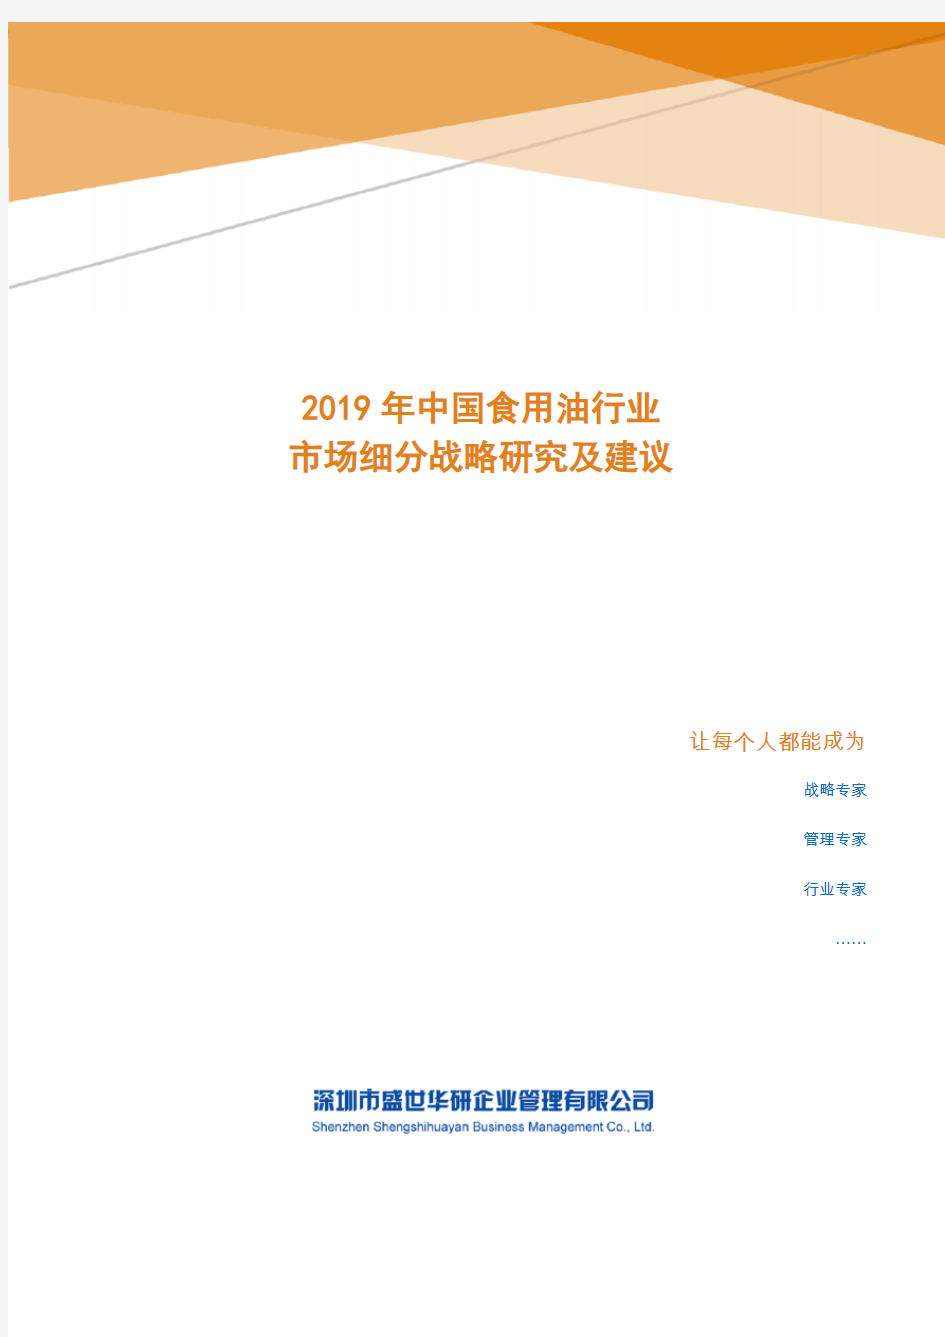 2019年中国食用油行业市场细分策略研究及建议